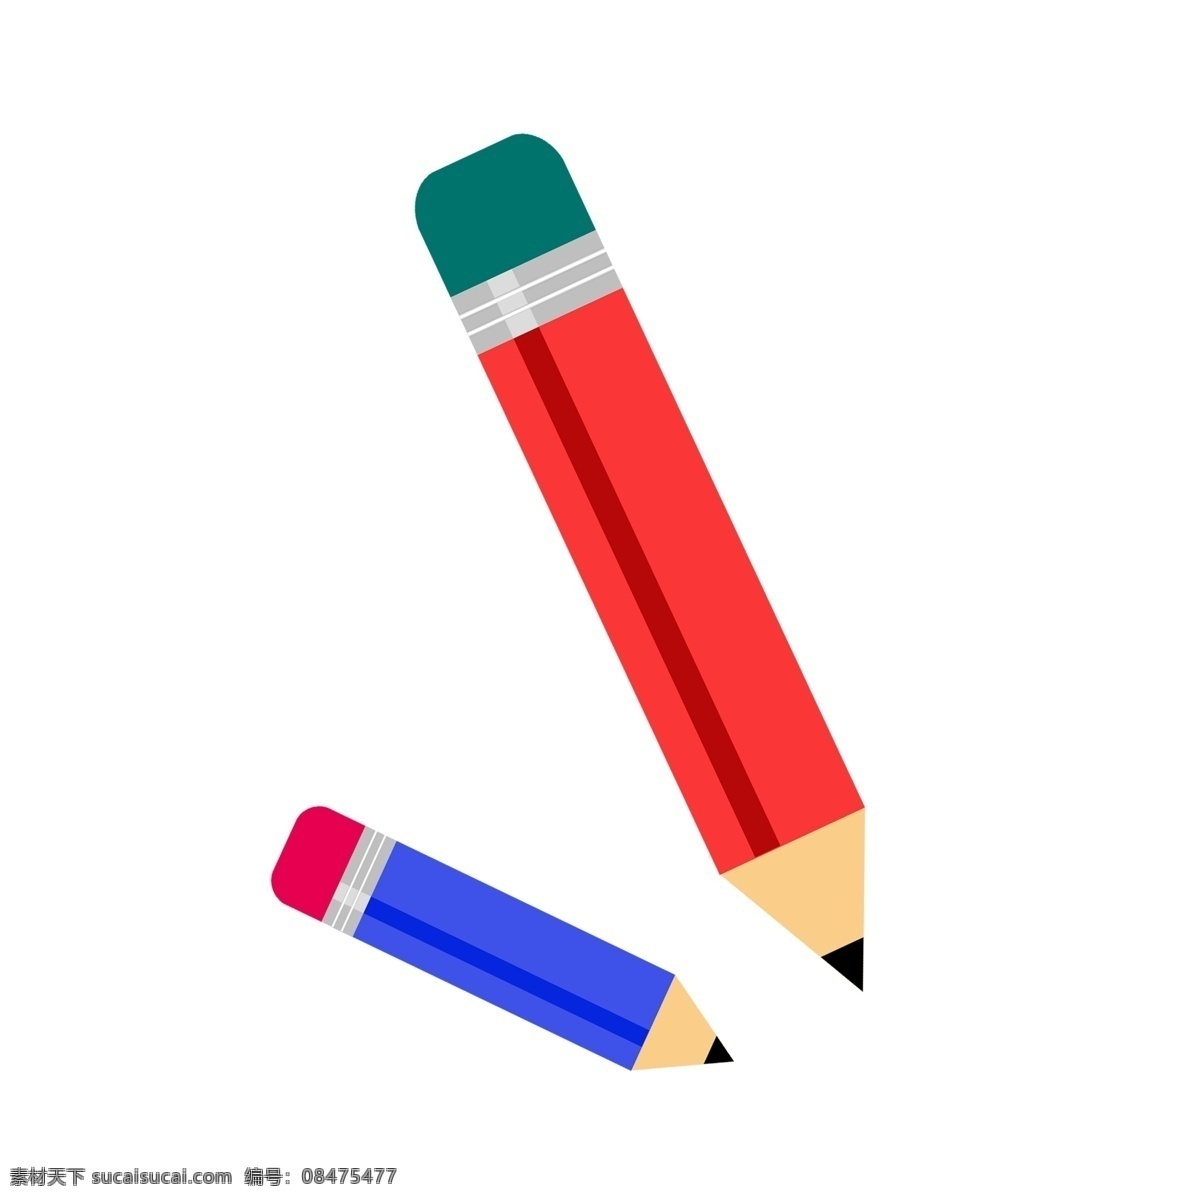 两 支 学习 铅笔 插图 两支铅笔 笔 文具 红色铅笔 蓝色铅笔 学习铅笔 带橡皮的铅笔 橡皮铅笔